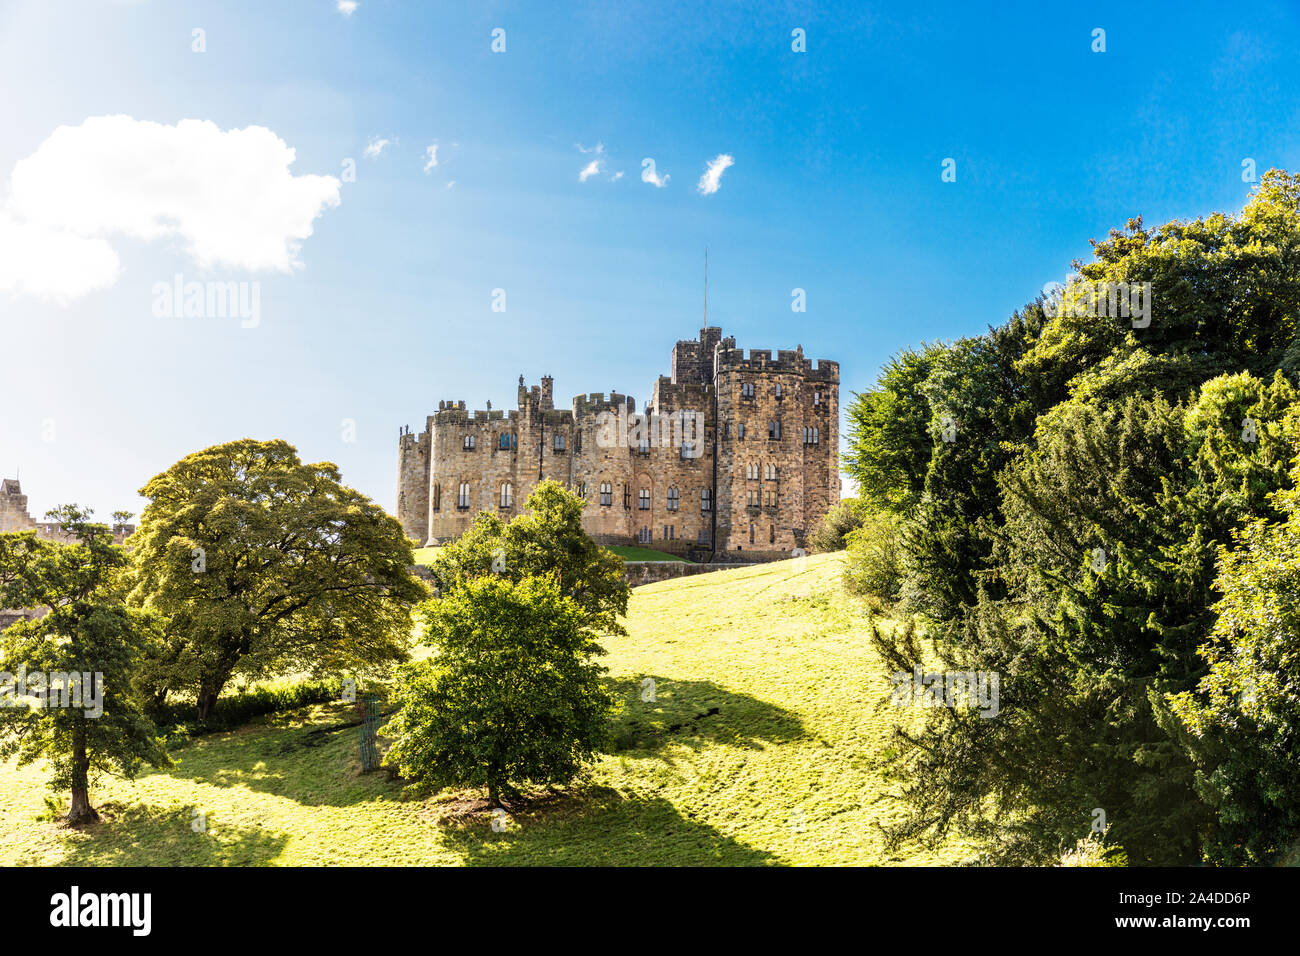 Alnwick Castle, château d'Alnwick, Alnwick, Northumberland, England, UK, château, châteaux, extérieur, parc, parc du château, façade, bâtiment, Banque D'Images